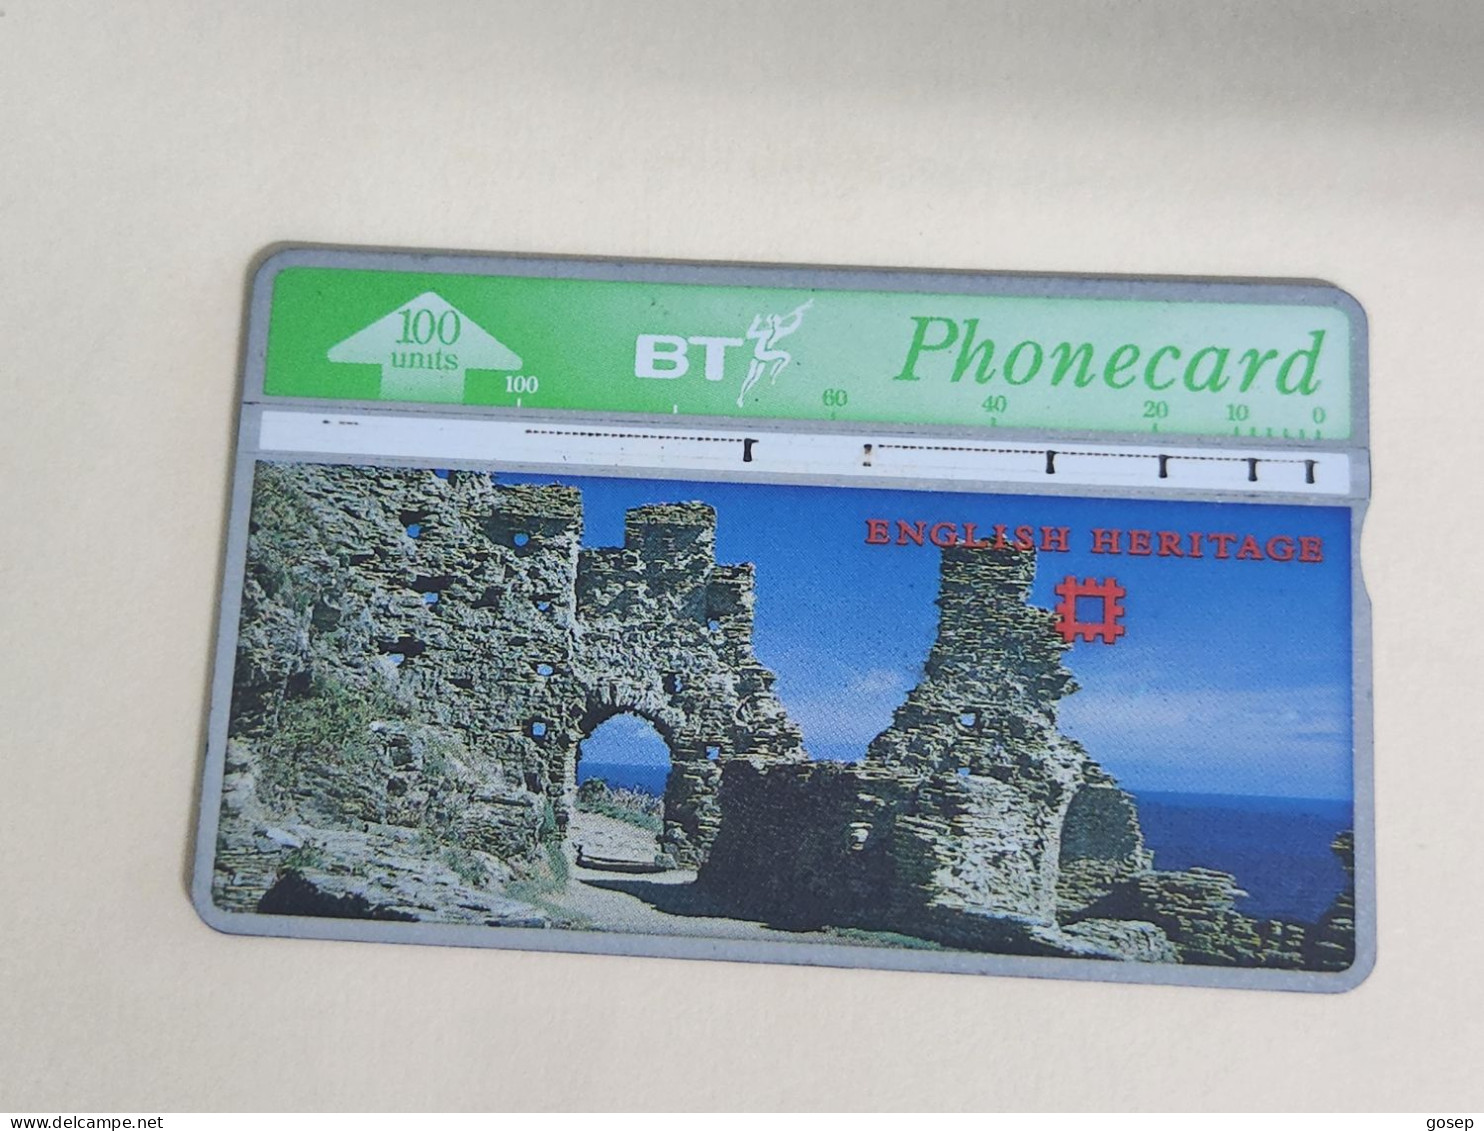 United Kingdom-(BTA121)-HERITAGE-Tintalgel Castle-(209)(100units)(527H03606)price Cataloge3.00£-used+1card Prepiad Free - BT Edición Publicitaria